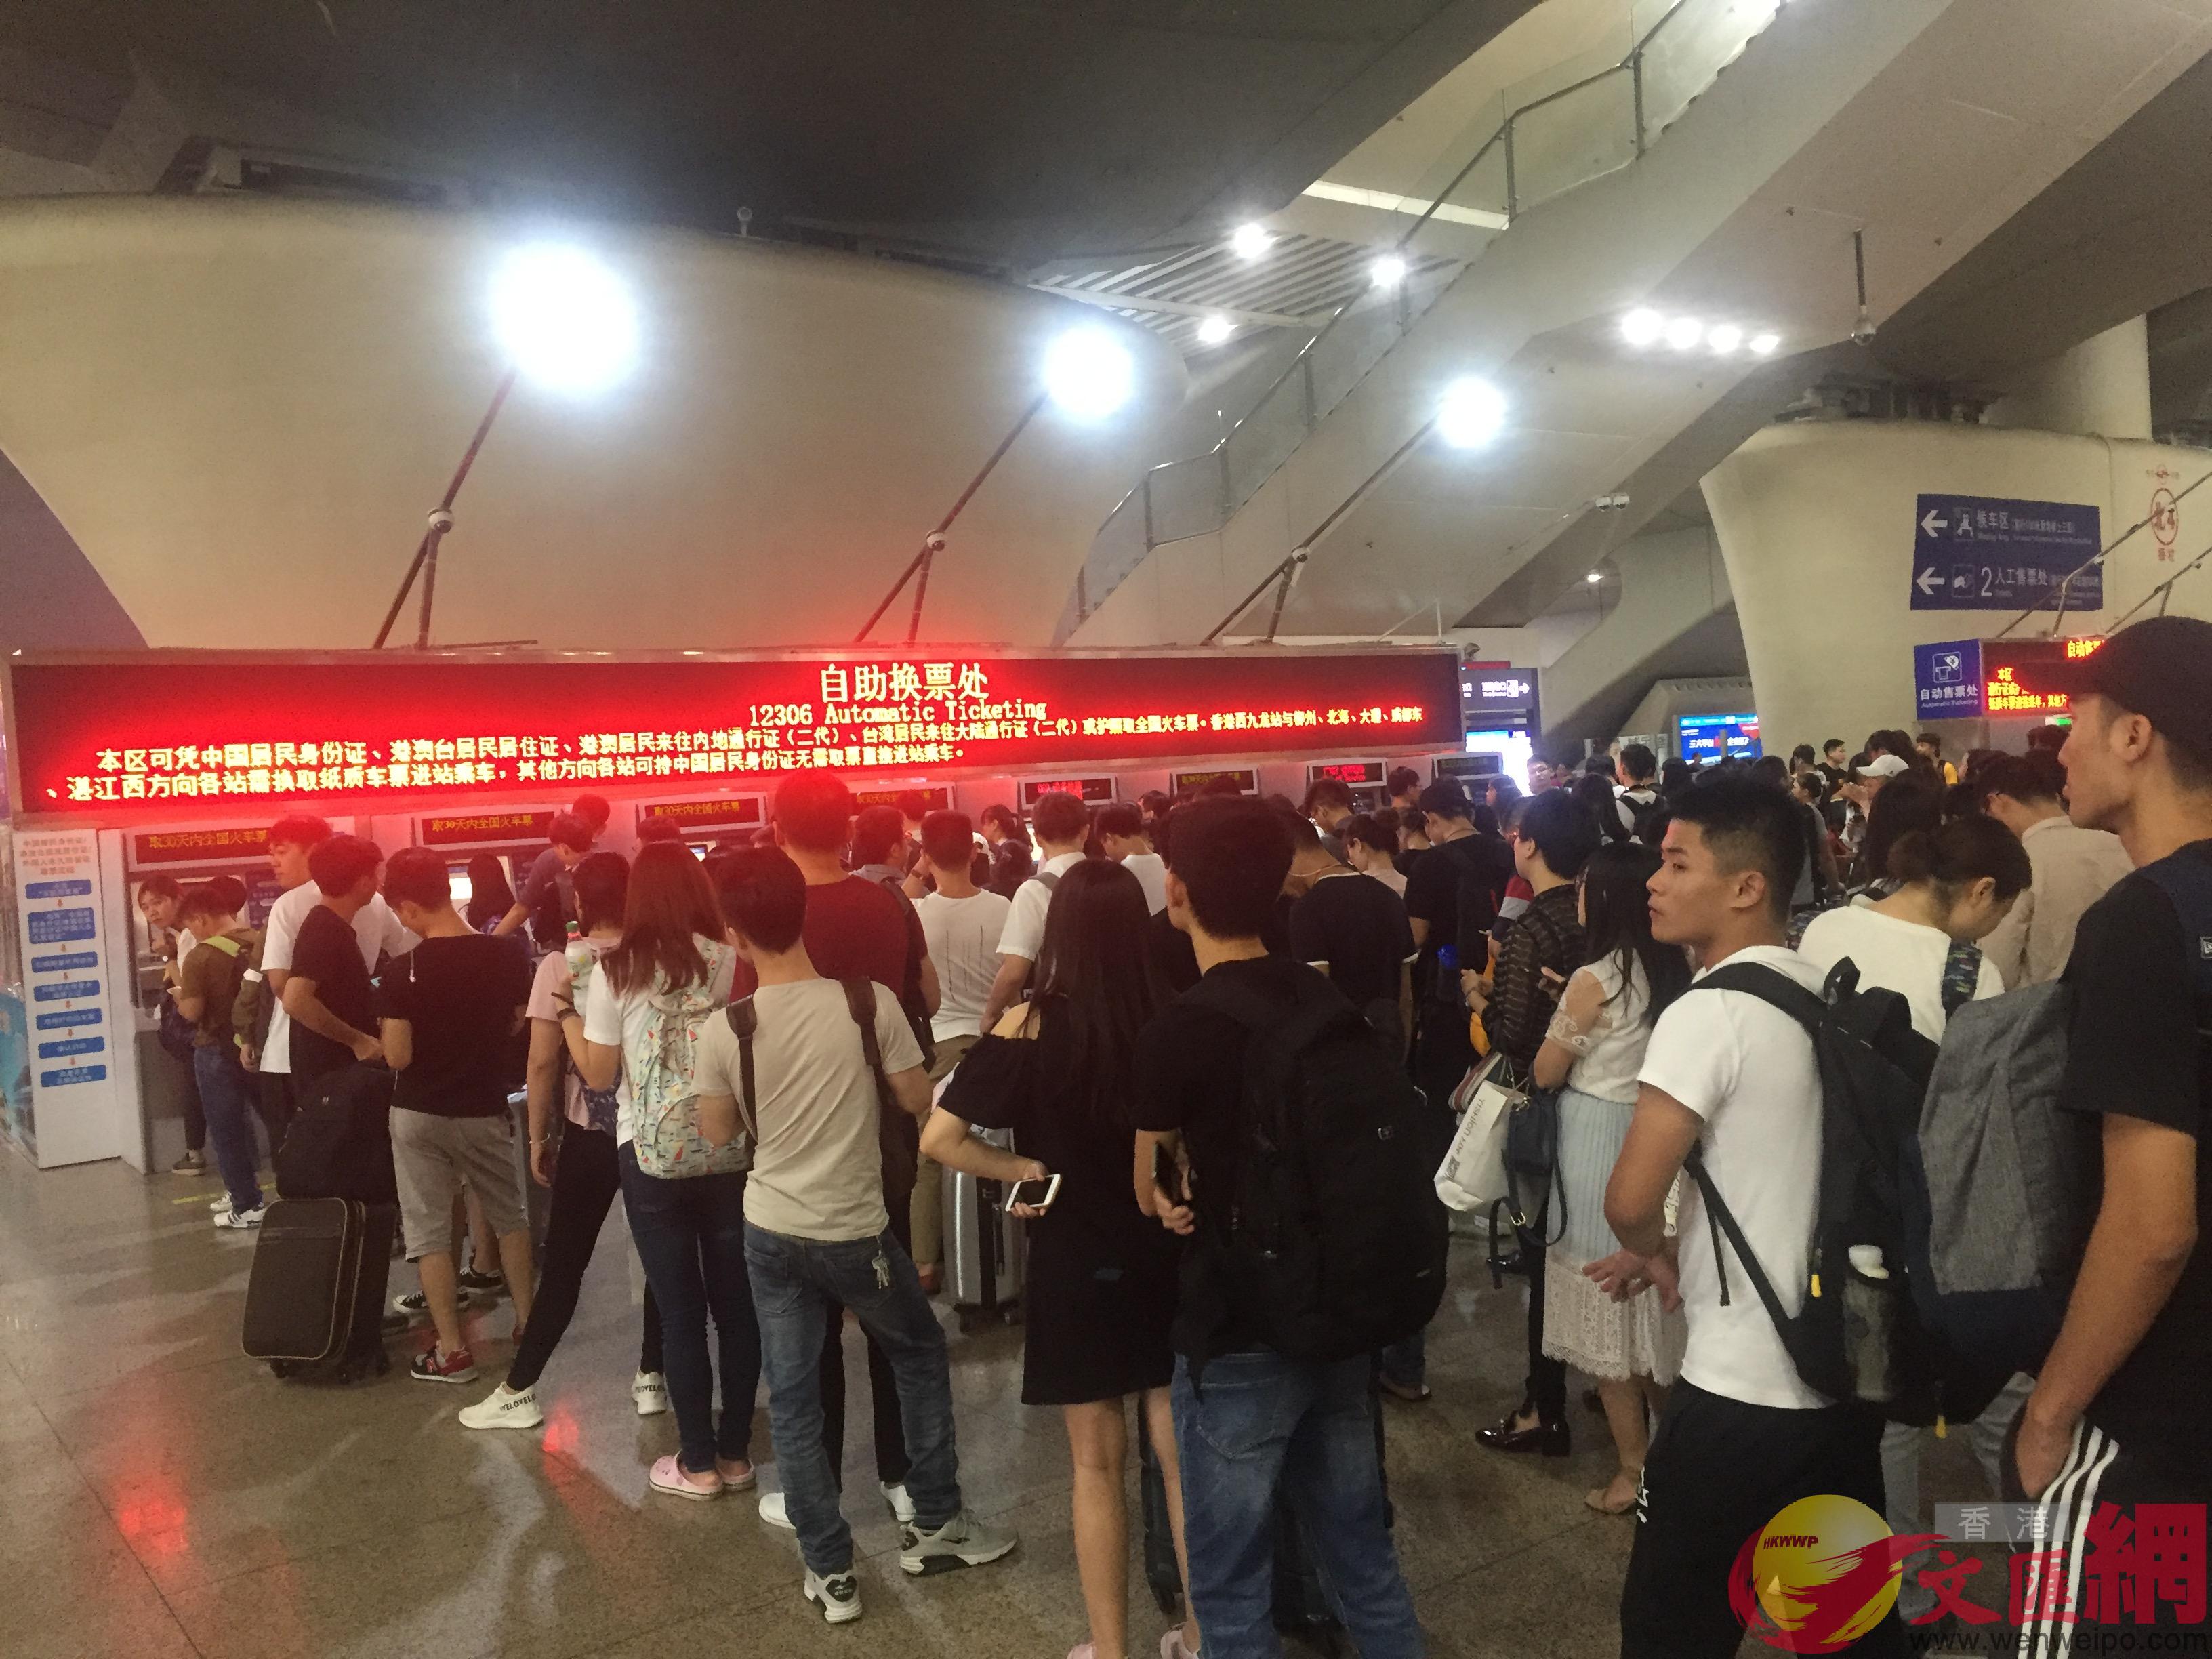 圖為大量旅客在廣州南站購取票]敖敏輝攝^